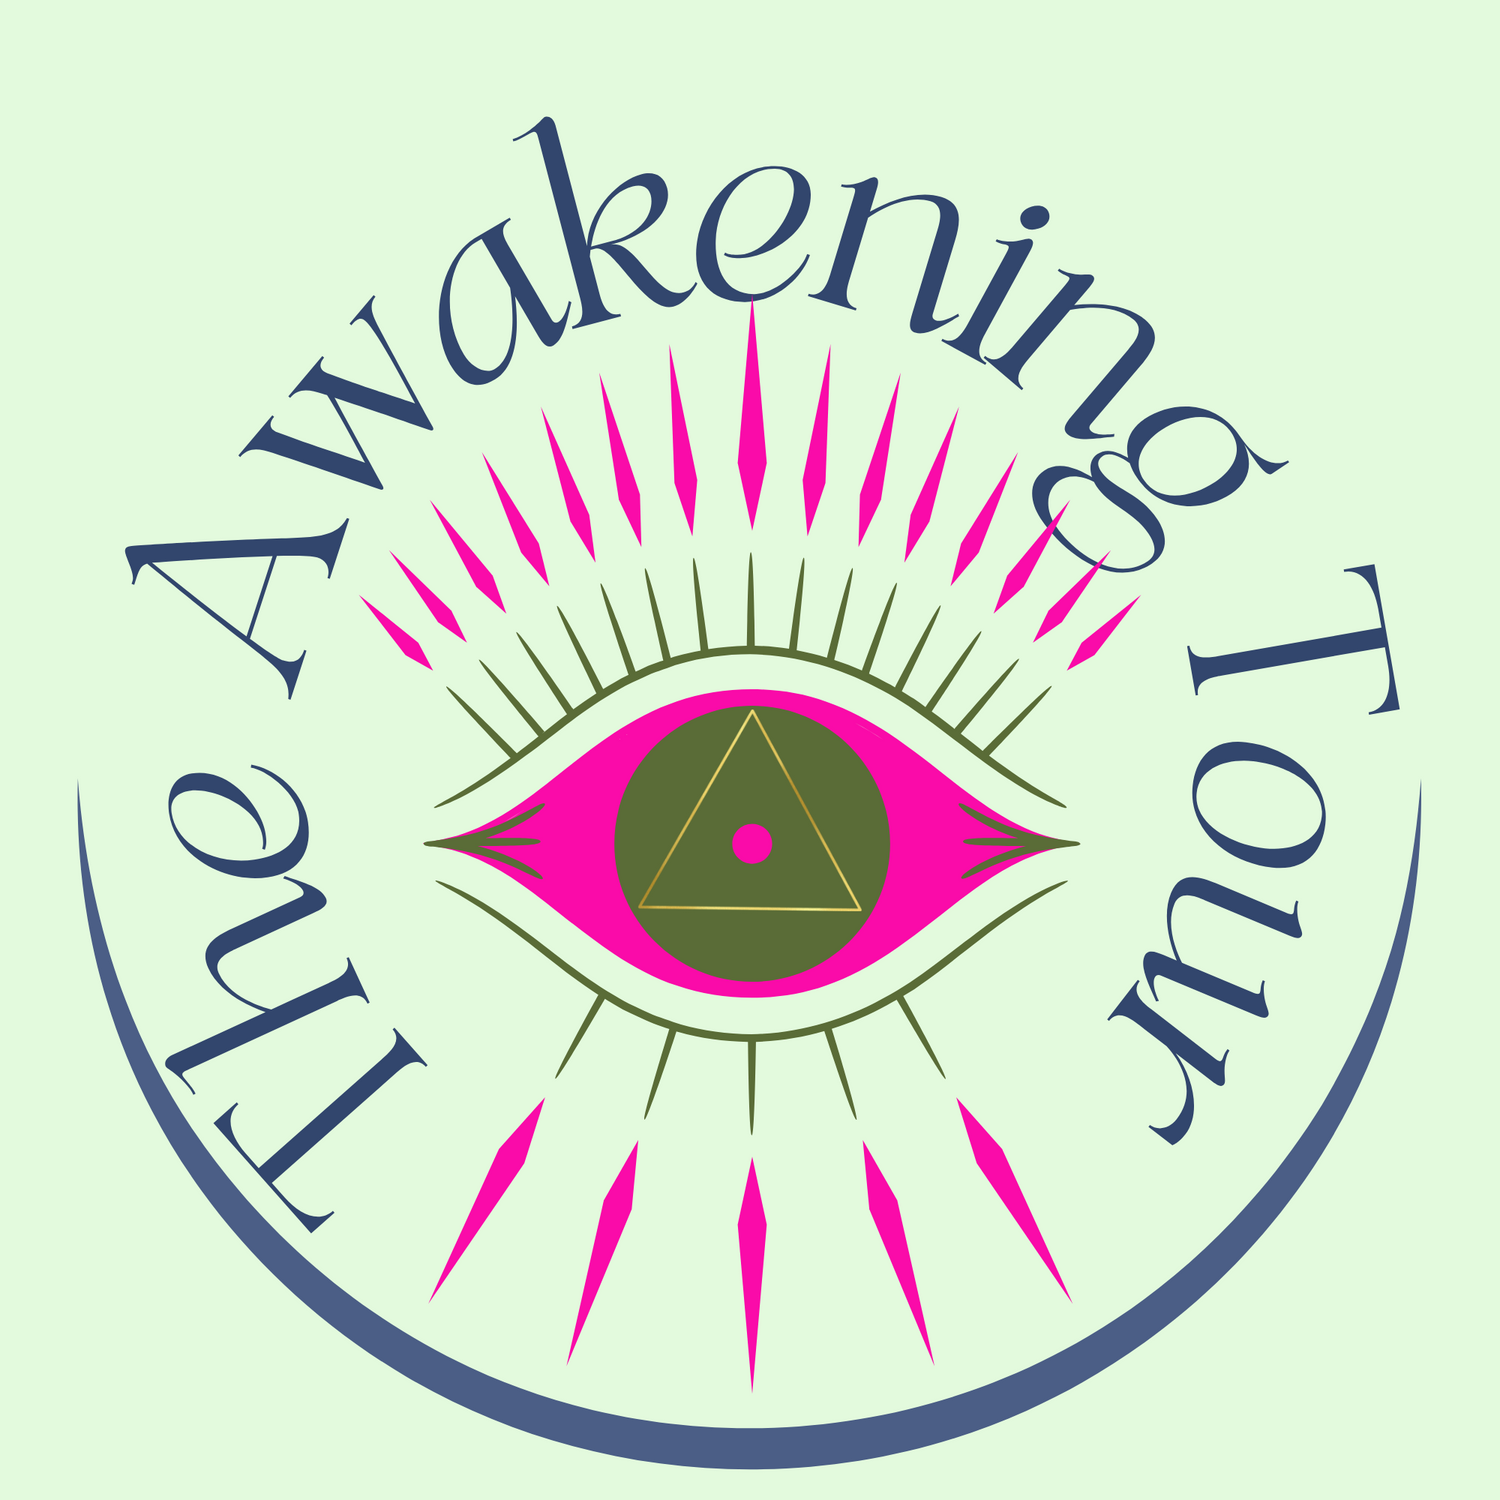 The Awakening Tour Workshops